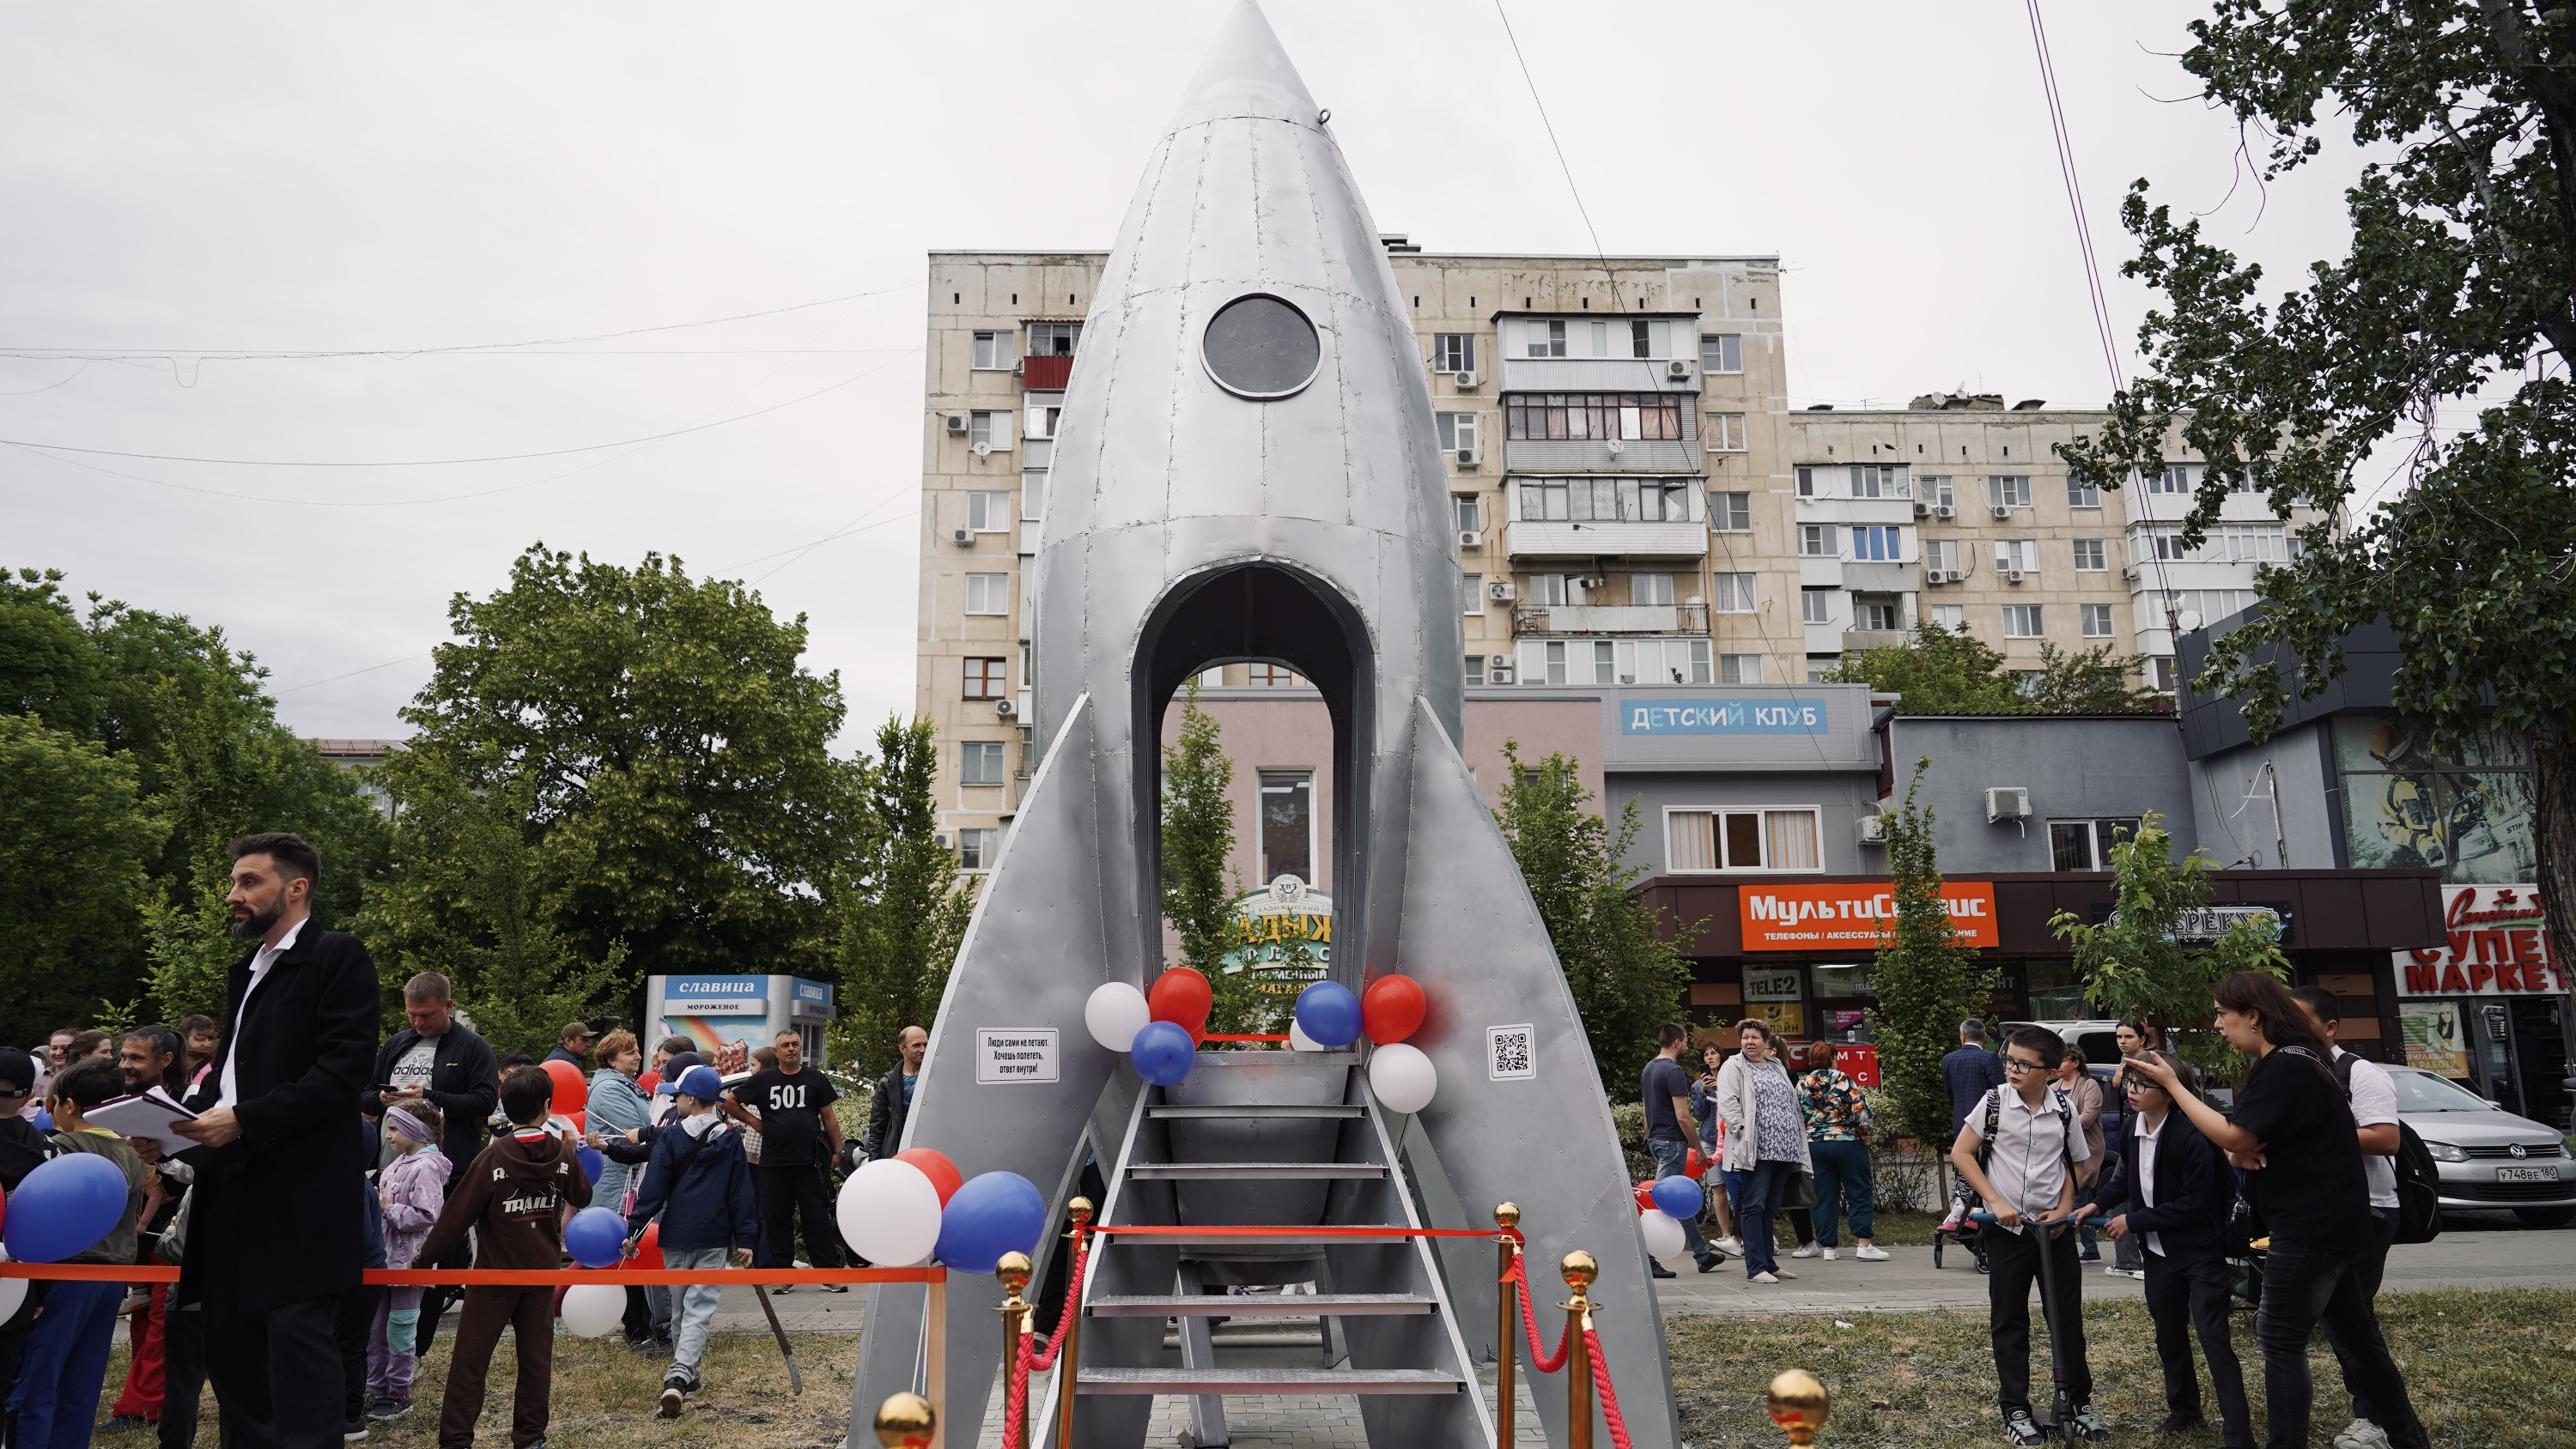 Арт-объект «Ракета» появился в ФМР в Краснодаре. Что это такое и сколько стоило?